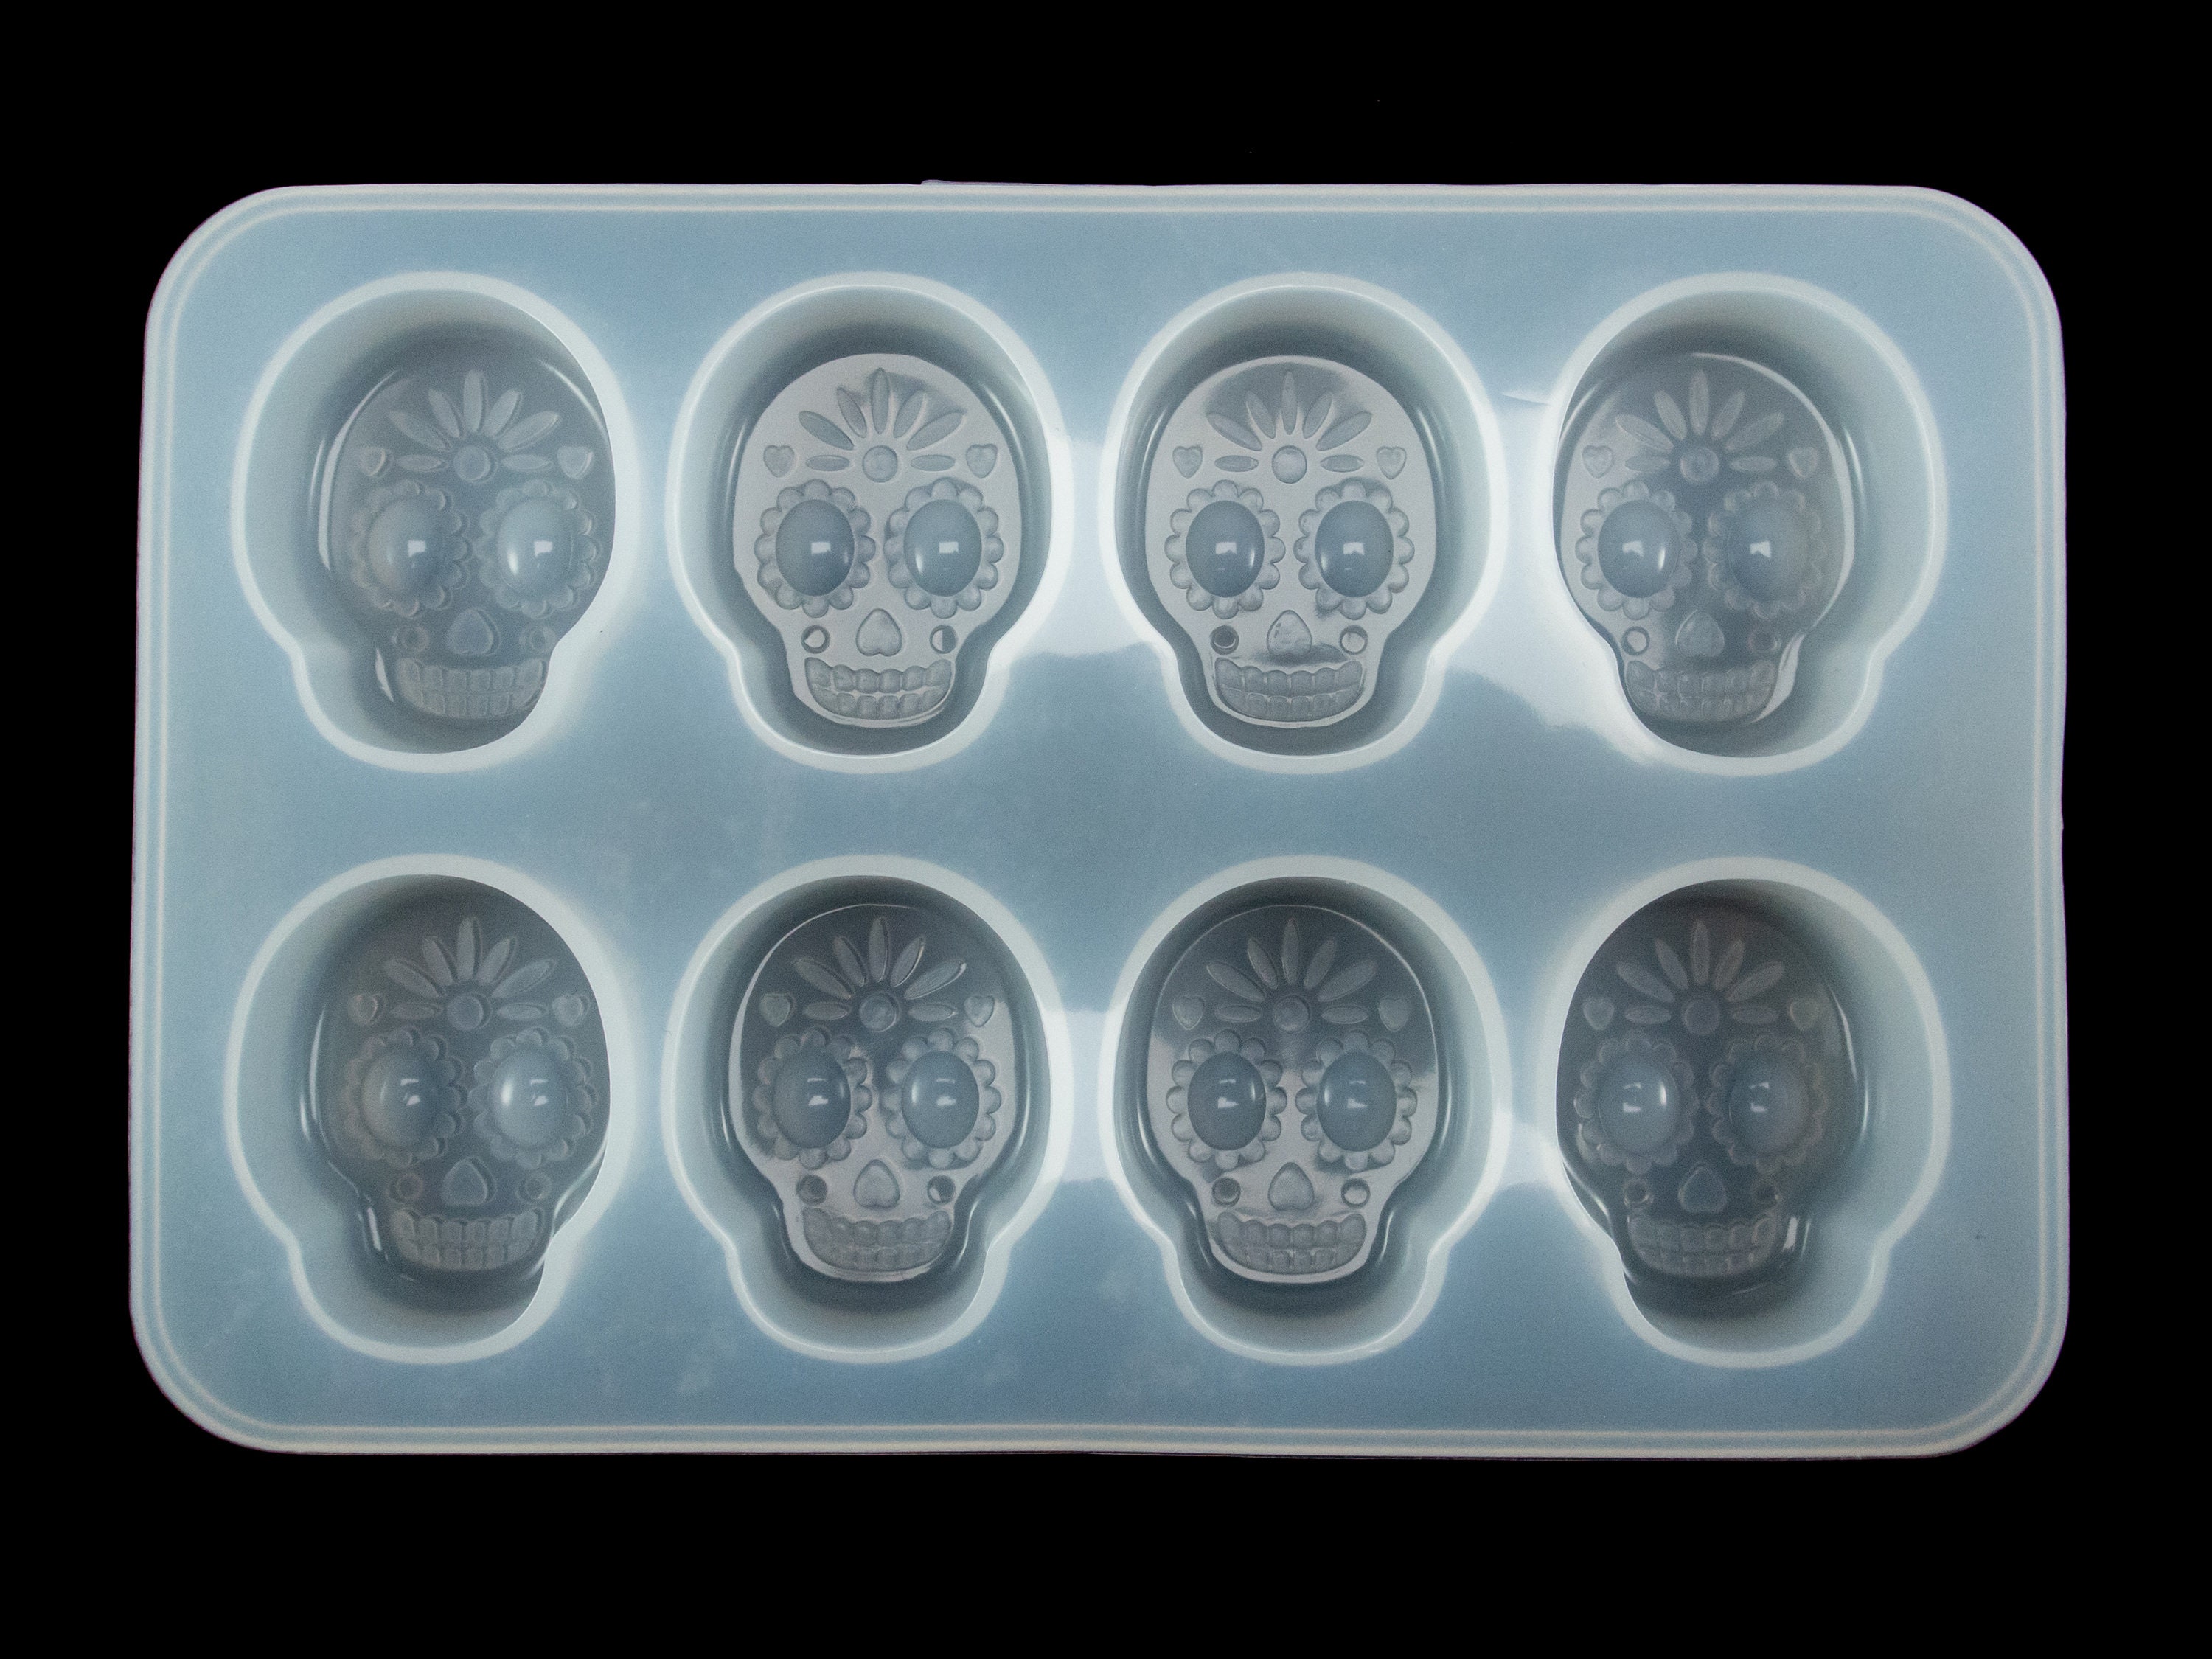 LET'S RESIN Silicone Skull Molds, 3D Large Skull Shape Molds for